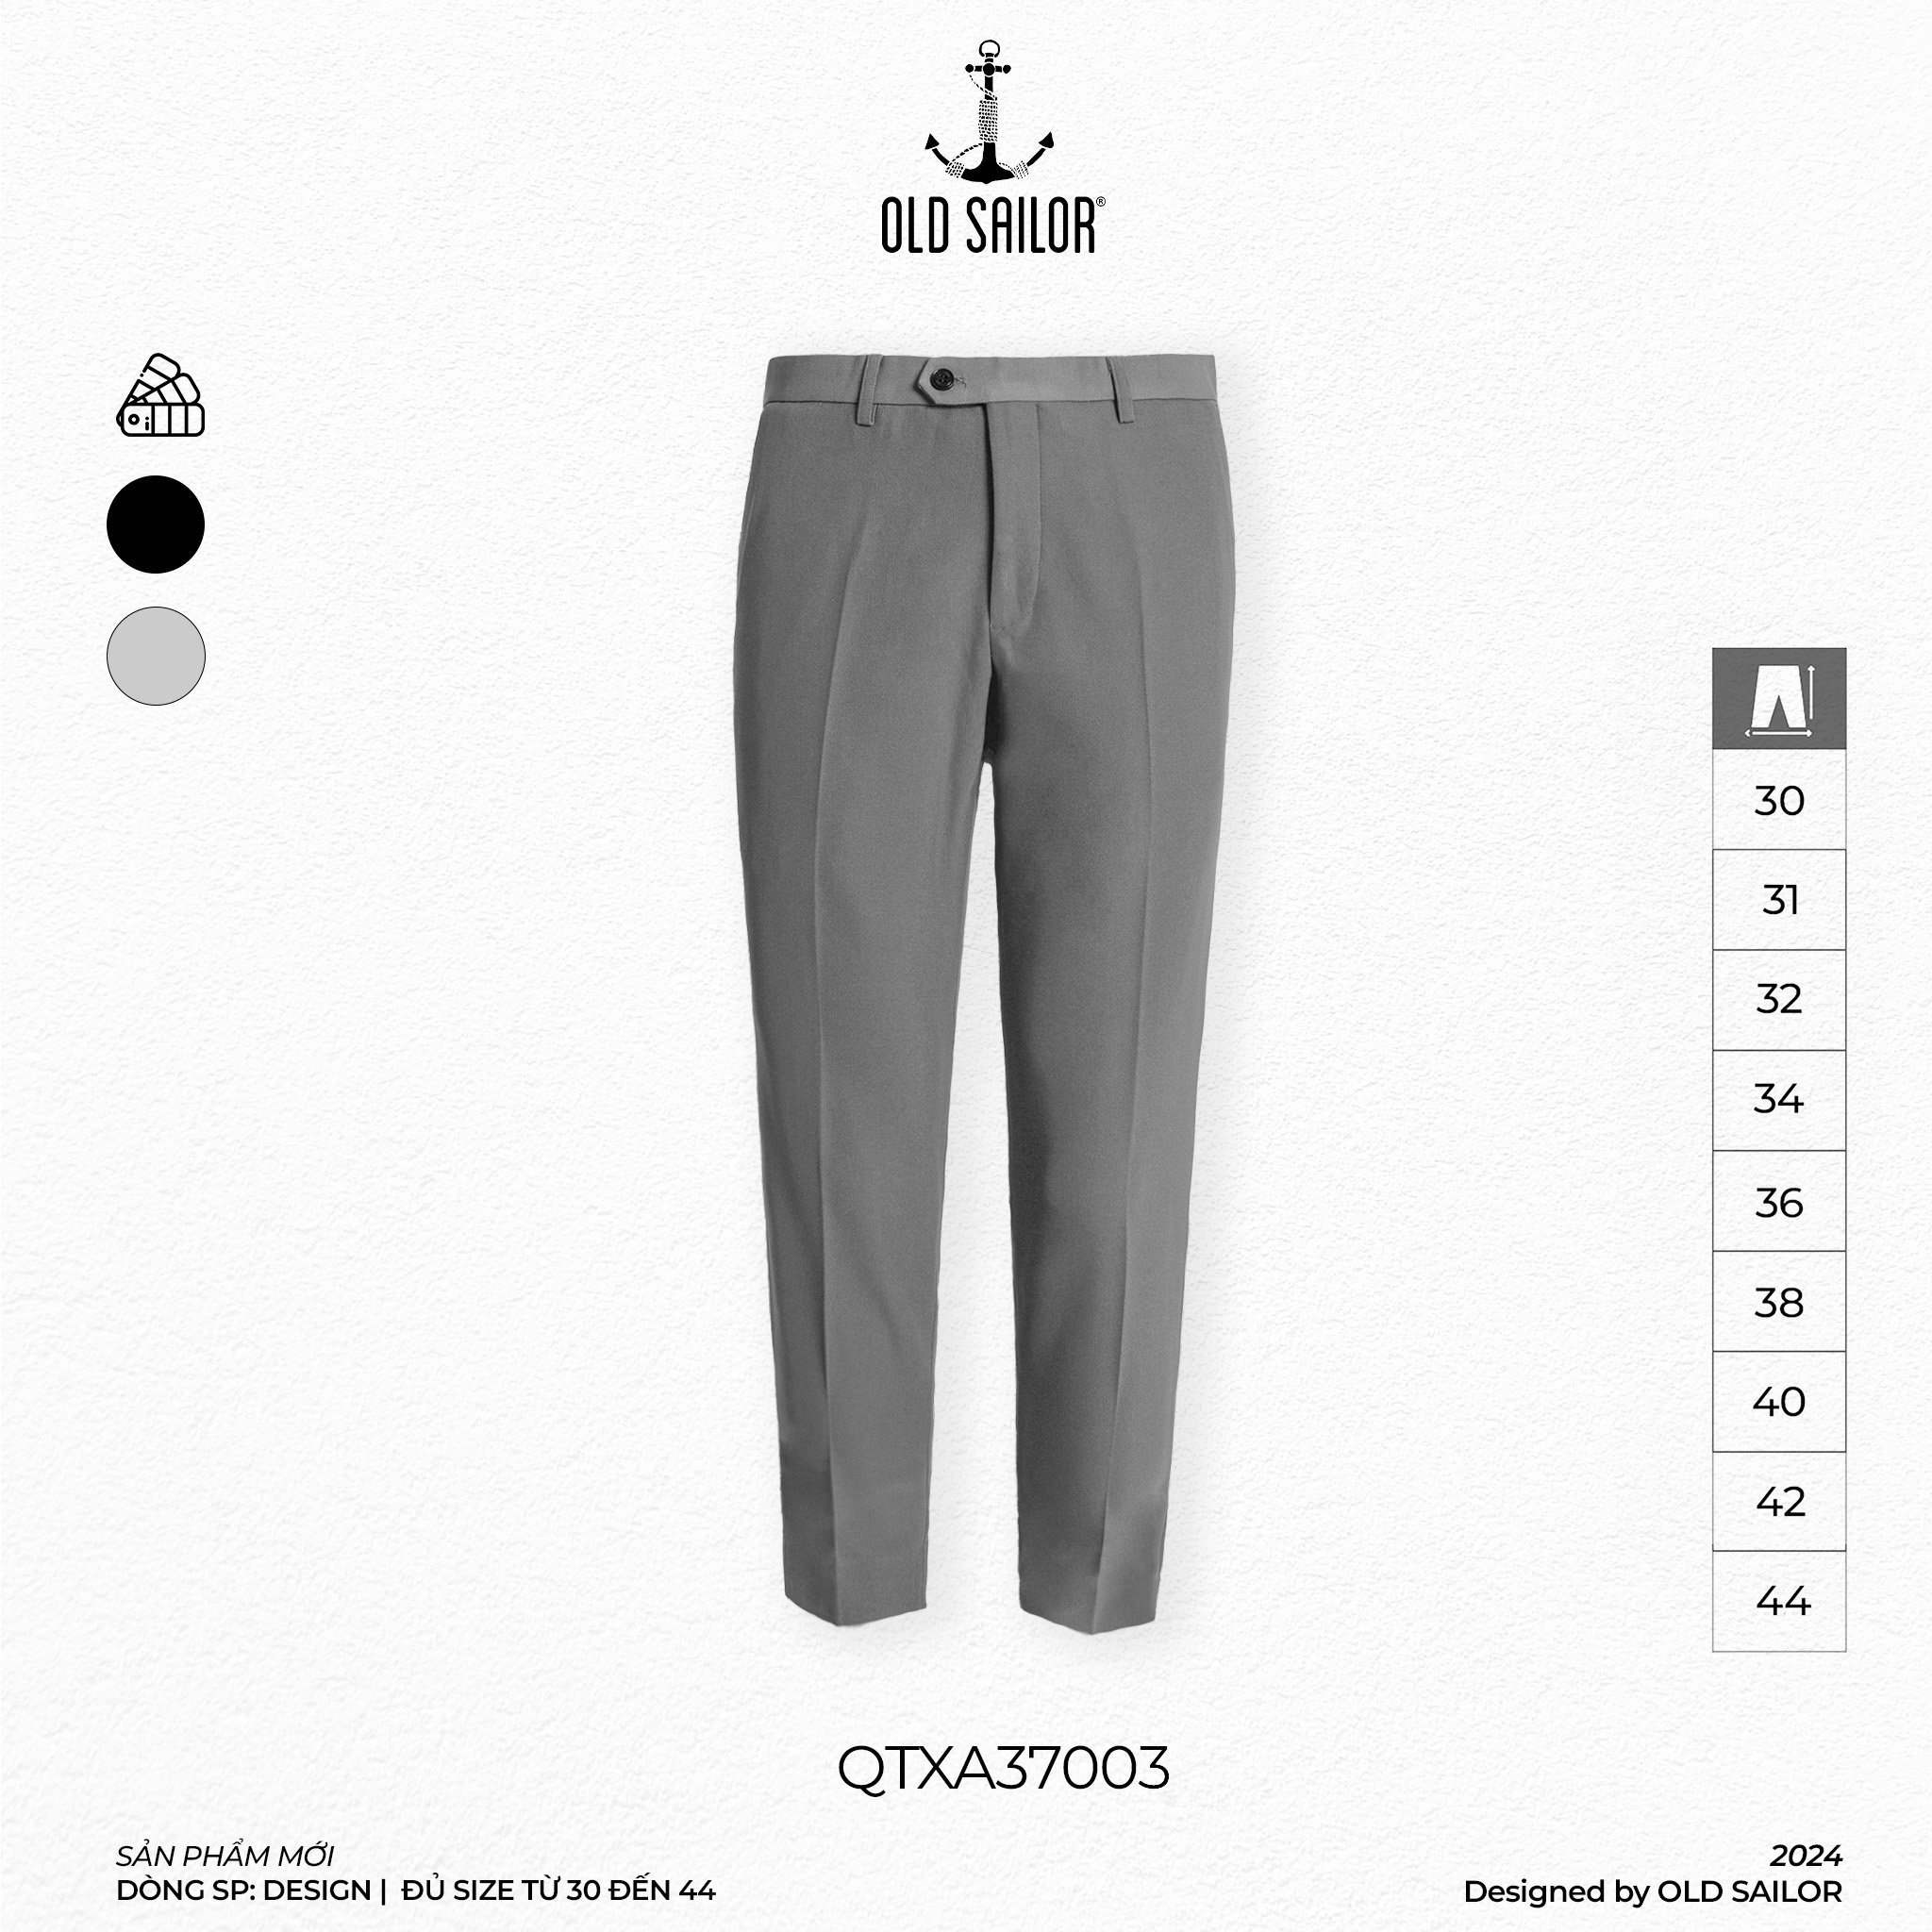 Quần tây comfort premium Old Sailor - QTXA37003 - xám - Big size upto 44